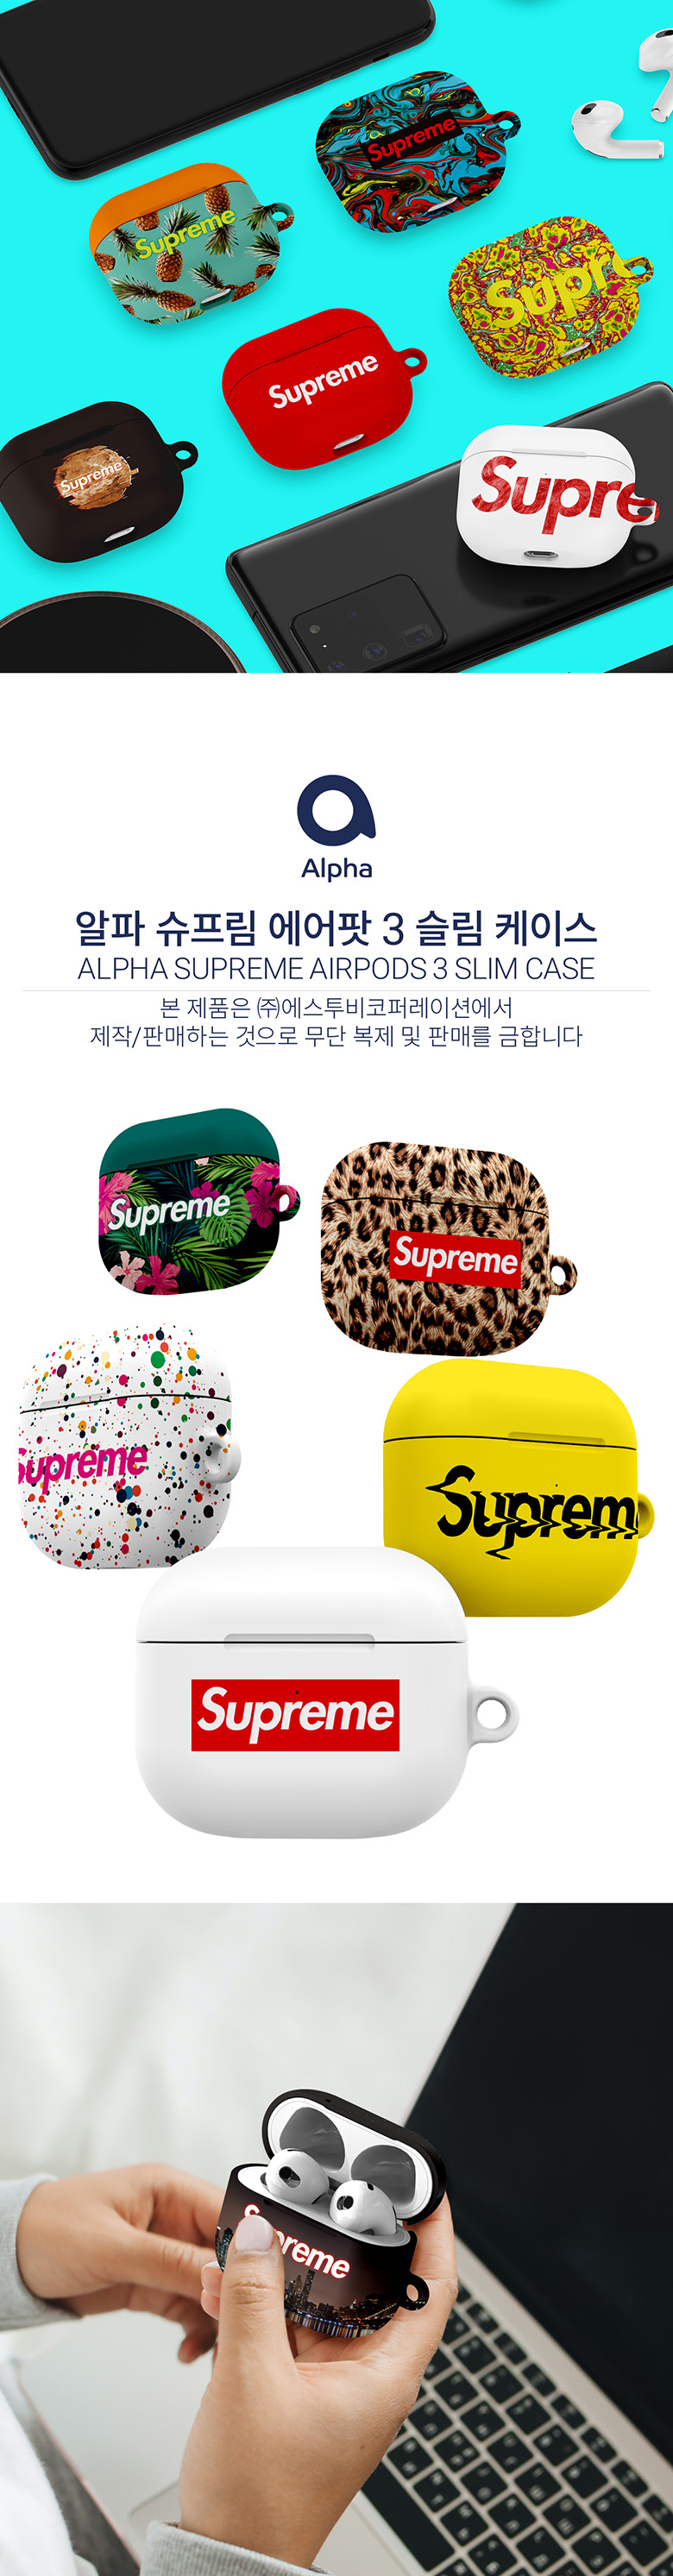 supreme airpod case amazon